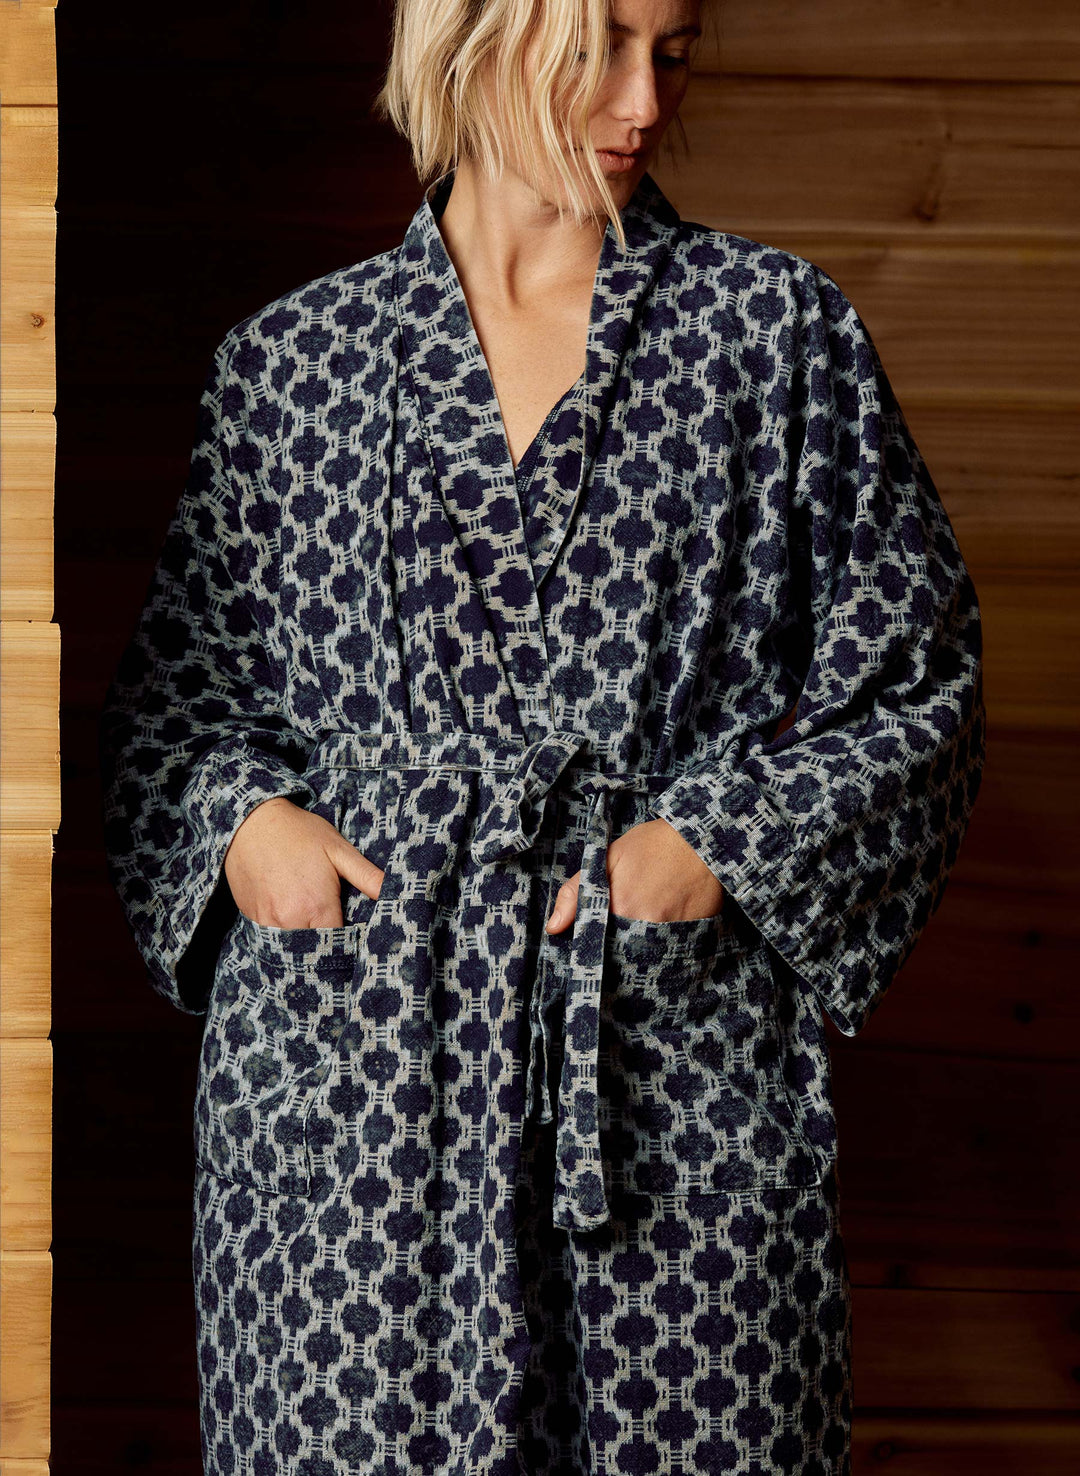 a woman wearing a robe